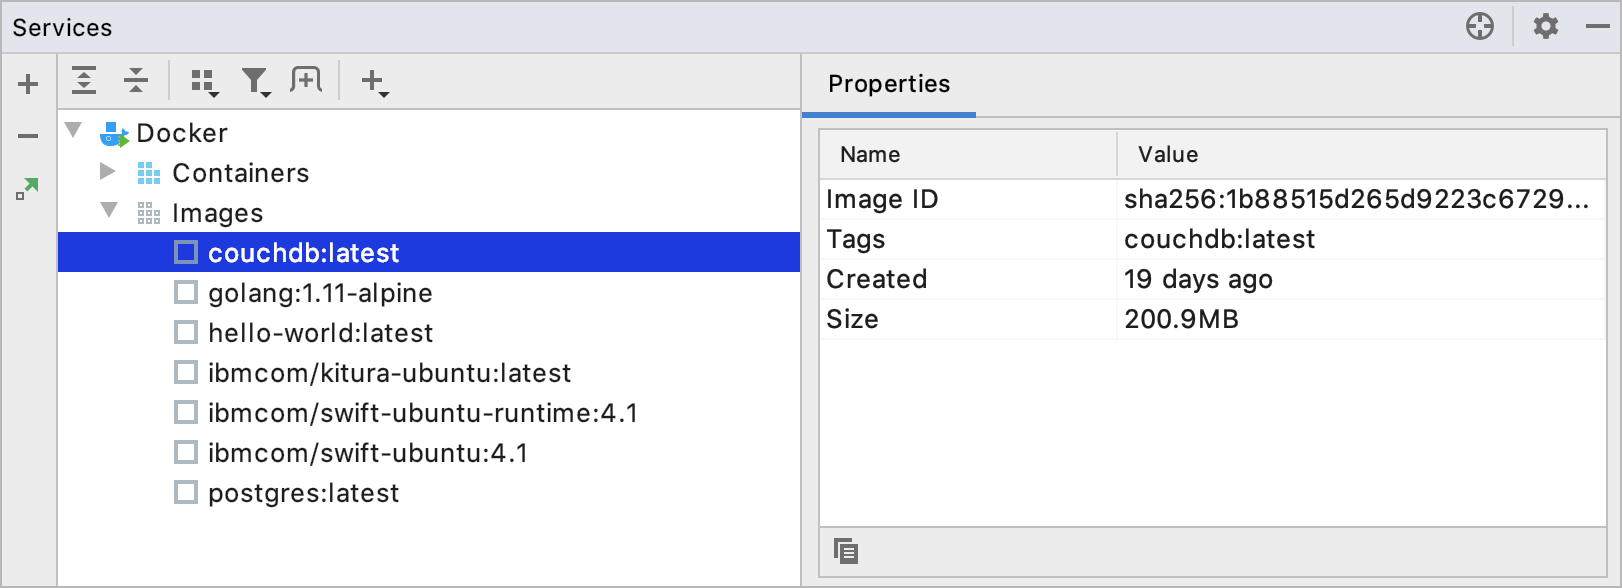 Docker image properties